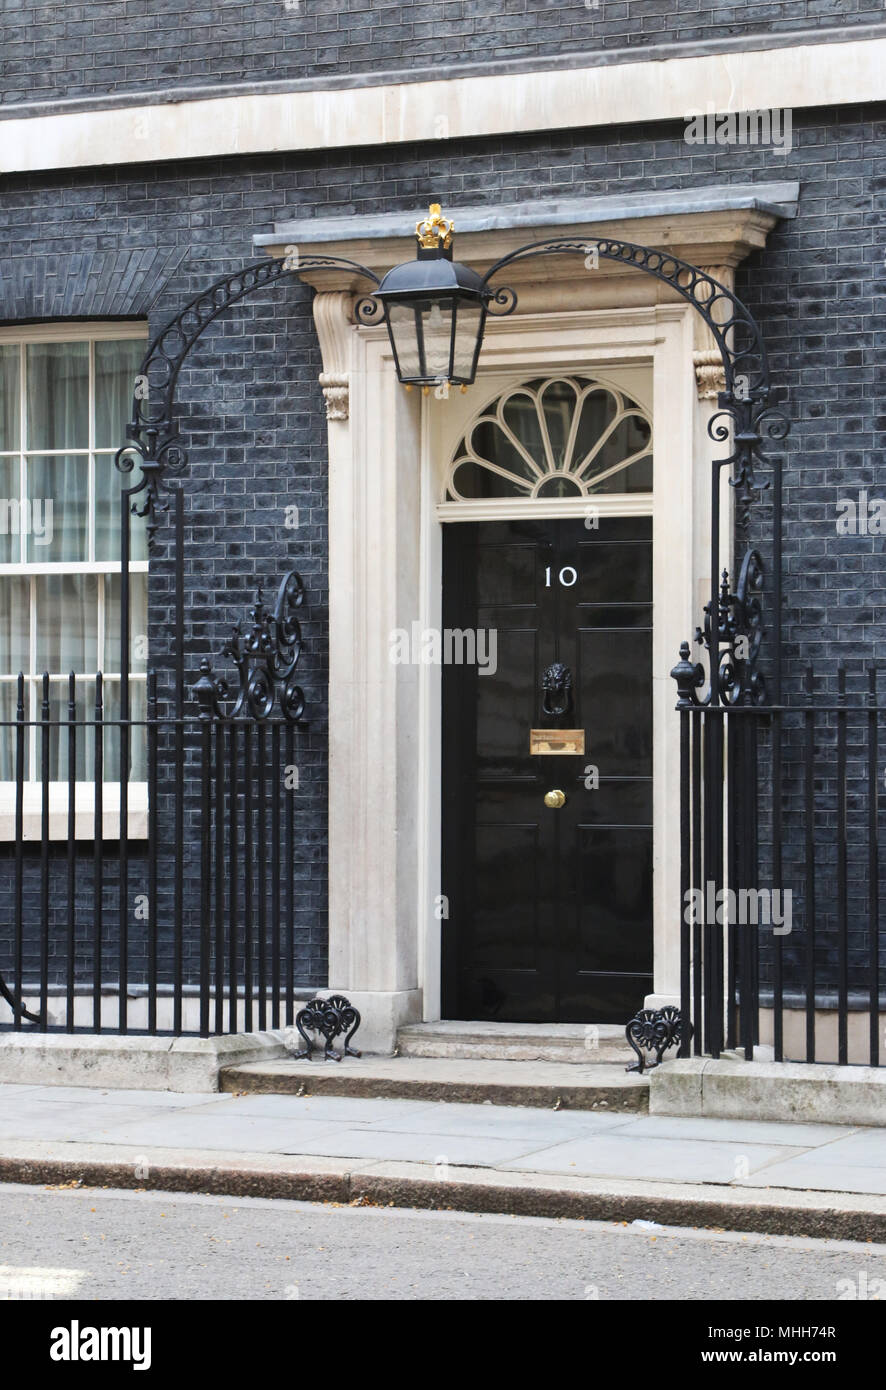 Nº 10 de Downing Street. Puerta frontal de la residencia del Primer Ministro británico. Londres, Inglaterra, Reino Unido. Foto de stock